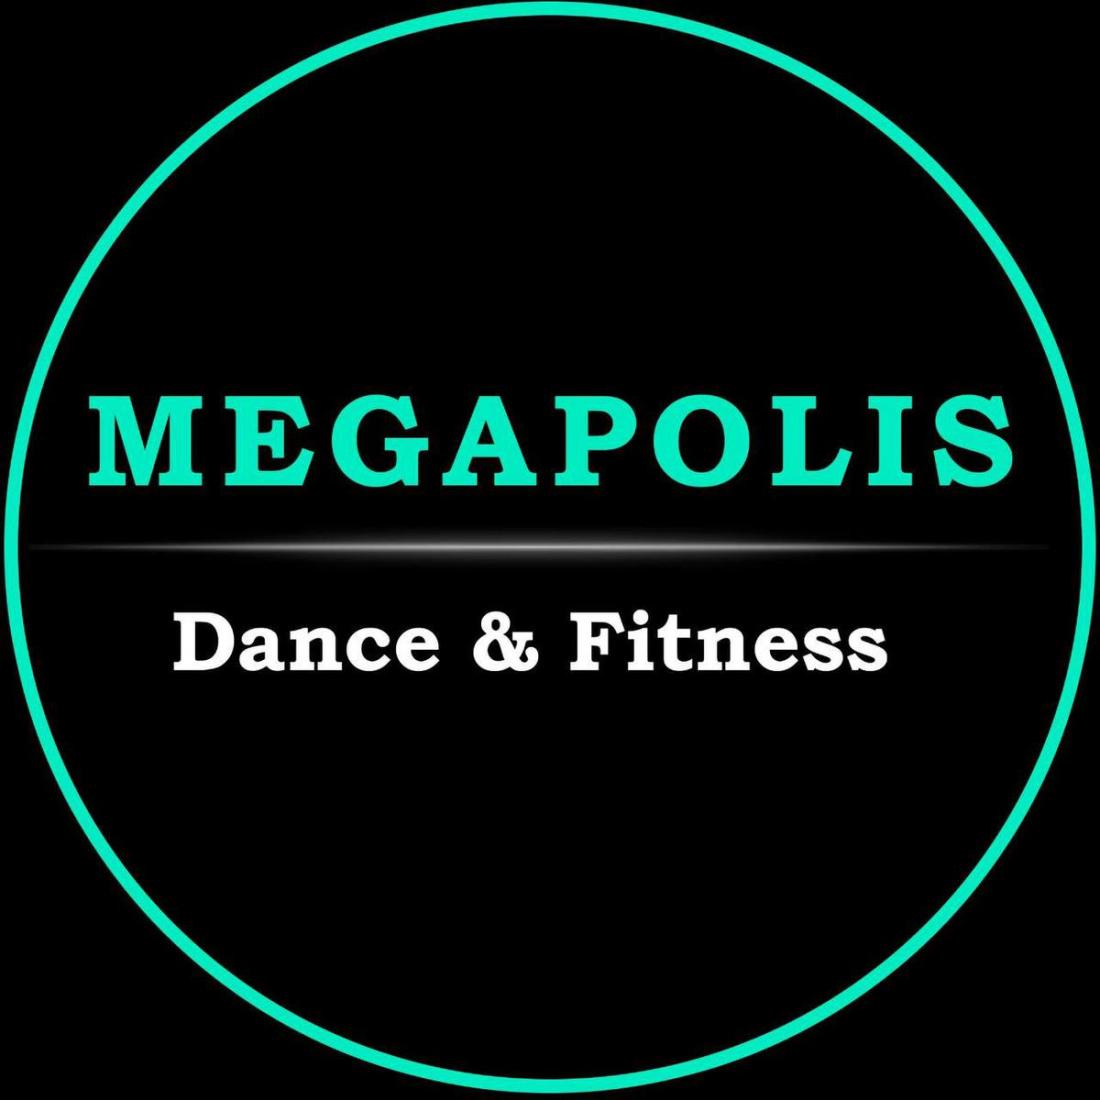 Абонементы на 8 занятий за 25 руб. в студии танца "Megapolis" в Бресте